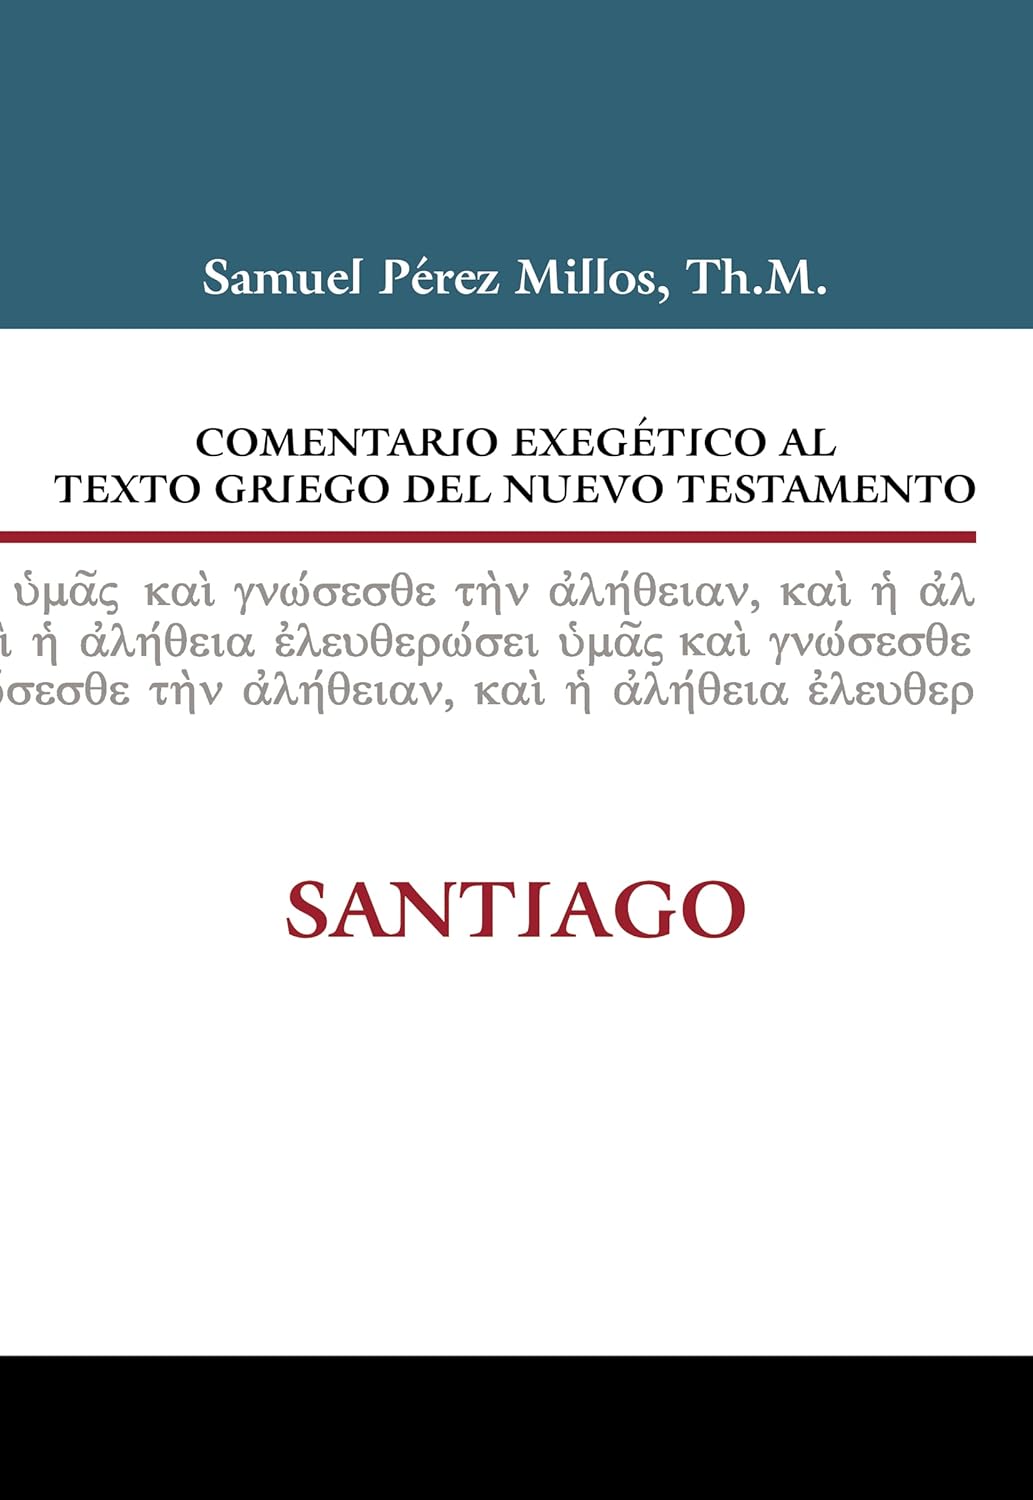 Comentario exegetico al texto griego Santiago